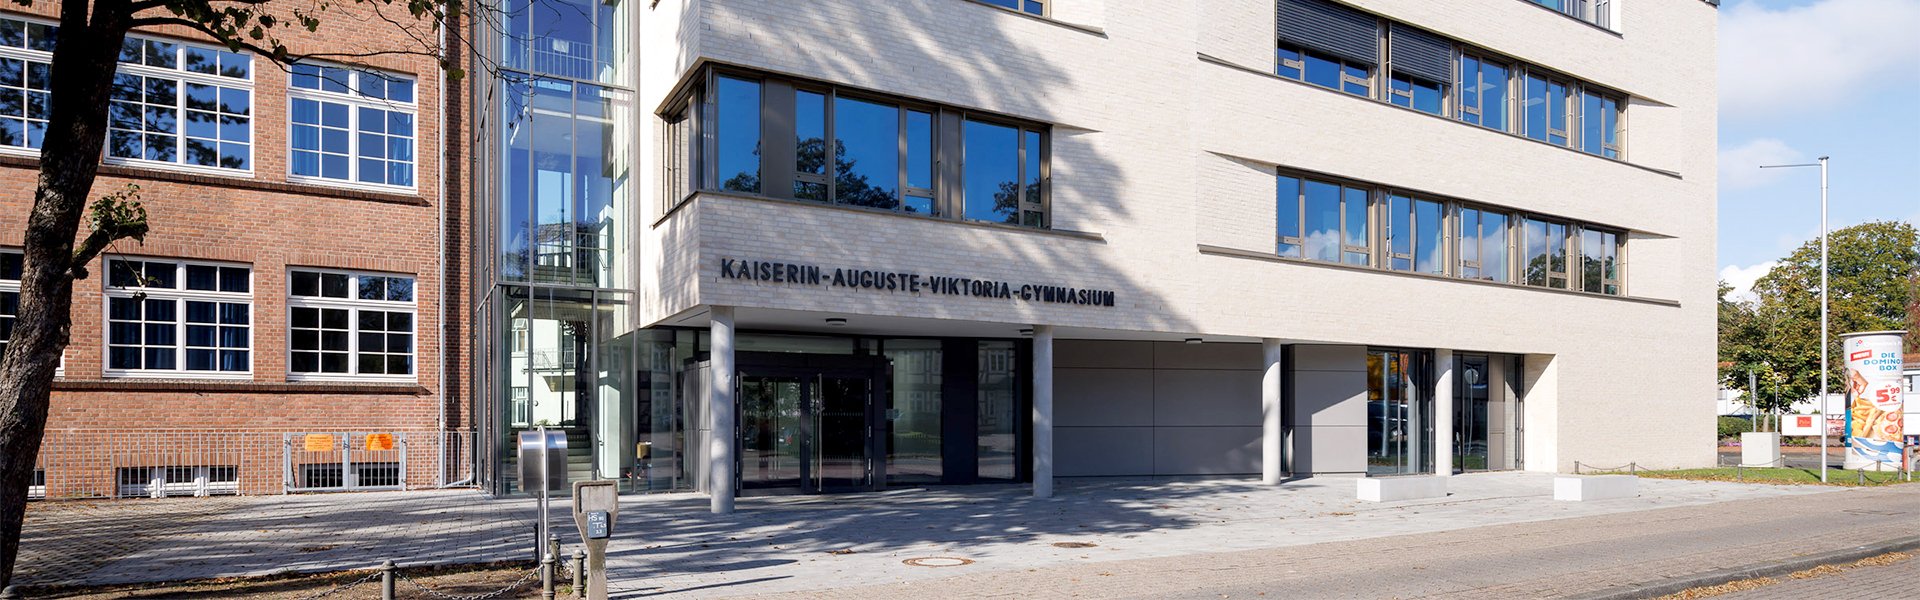 Bild: Kaiserin-Auguste-Viktoria-Gymnasium Banner